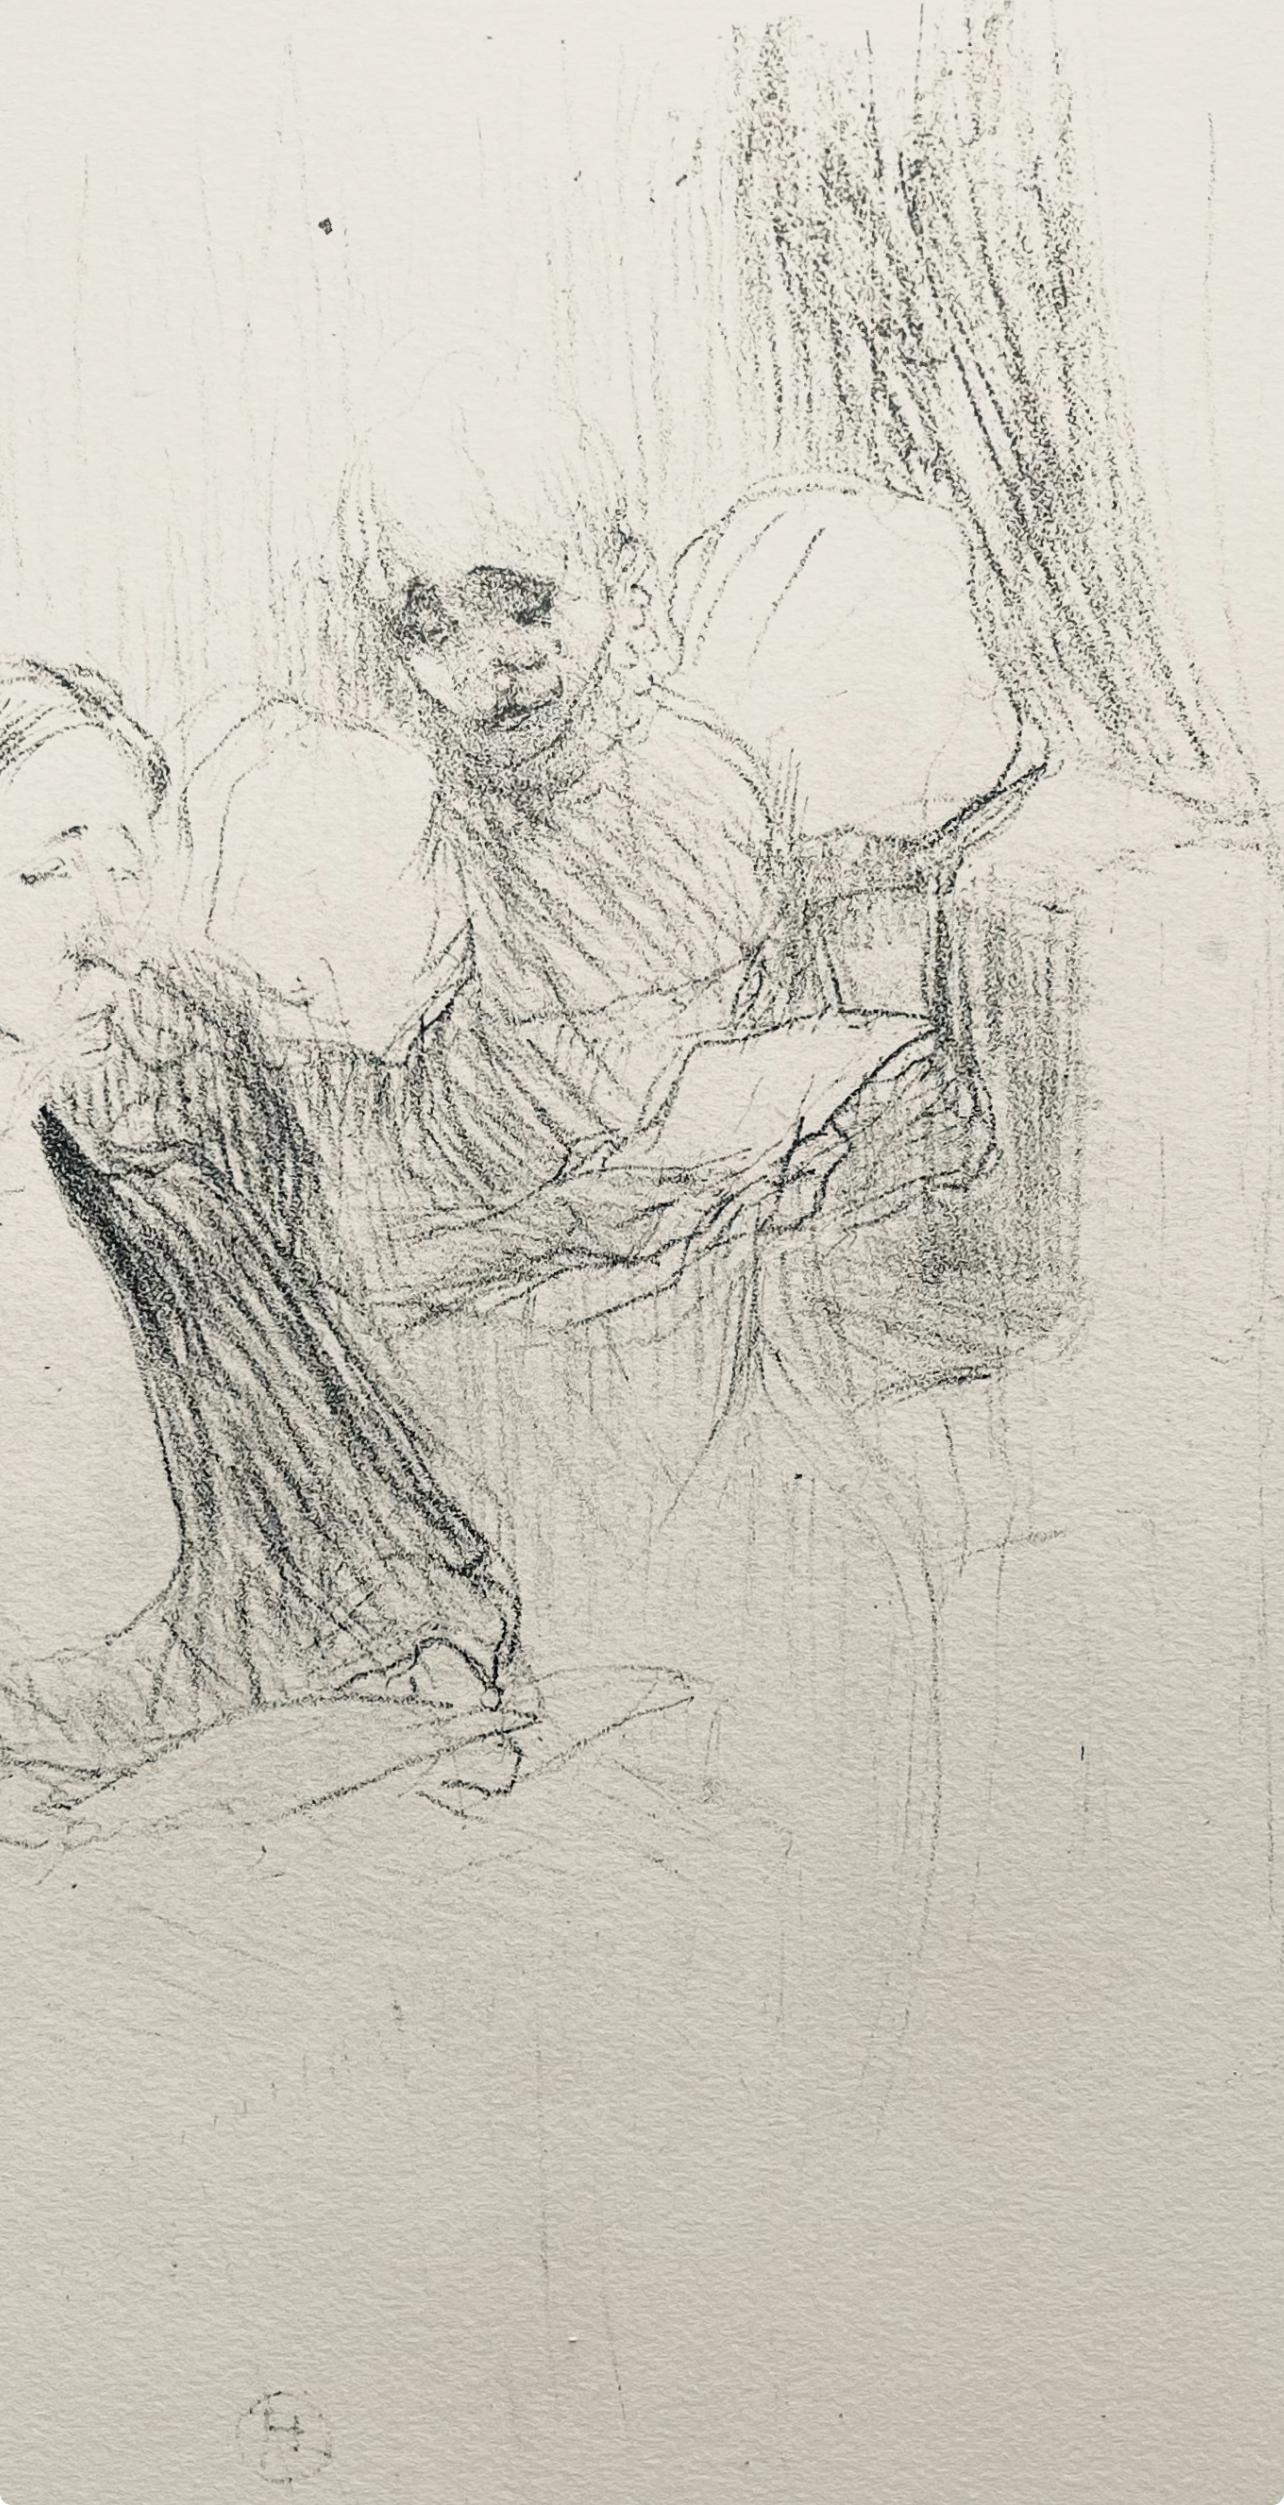 Toulouse-Lautrec, Composition, Yvette Guilbert vue par Toulouse-Lautrec (after) - Post-Impressionist Print by Henri de Toulouse-Lautrec